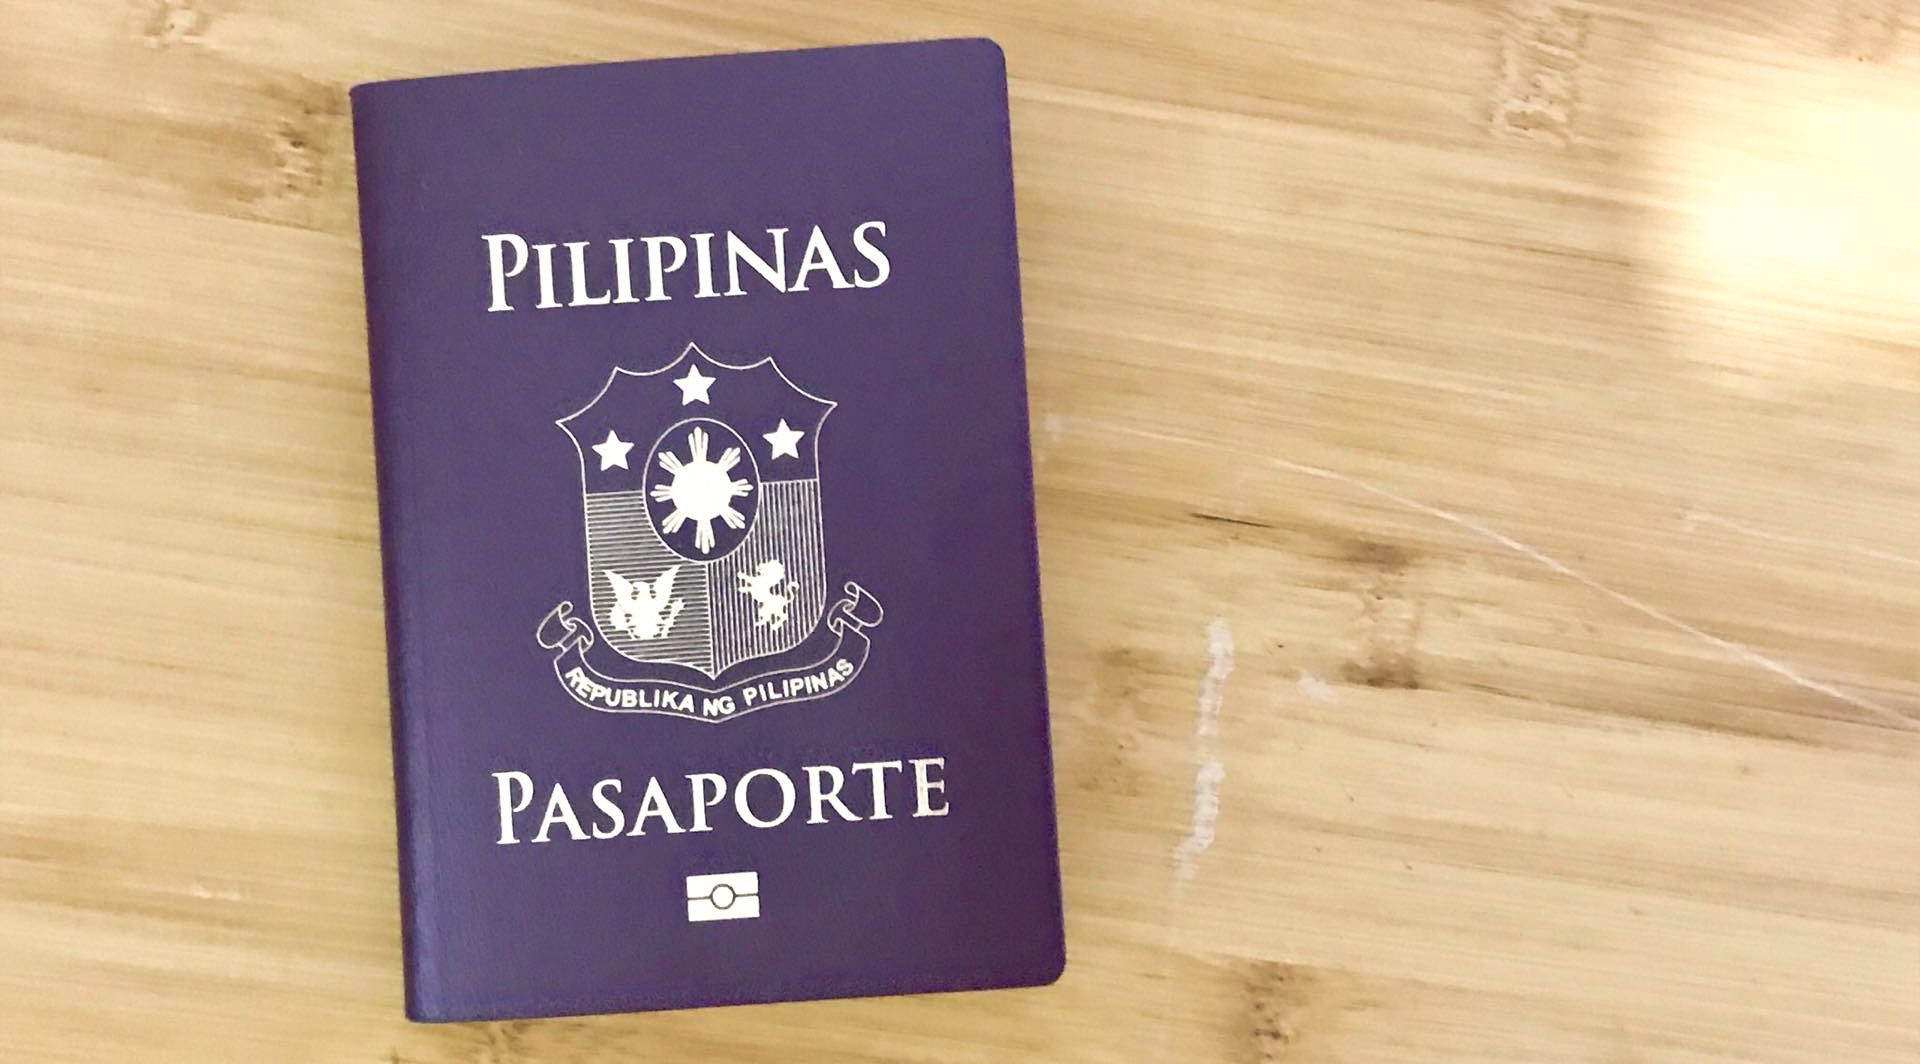 How To Get Philippine Passport New And Renew Requirements Procedures